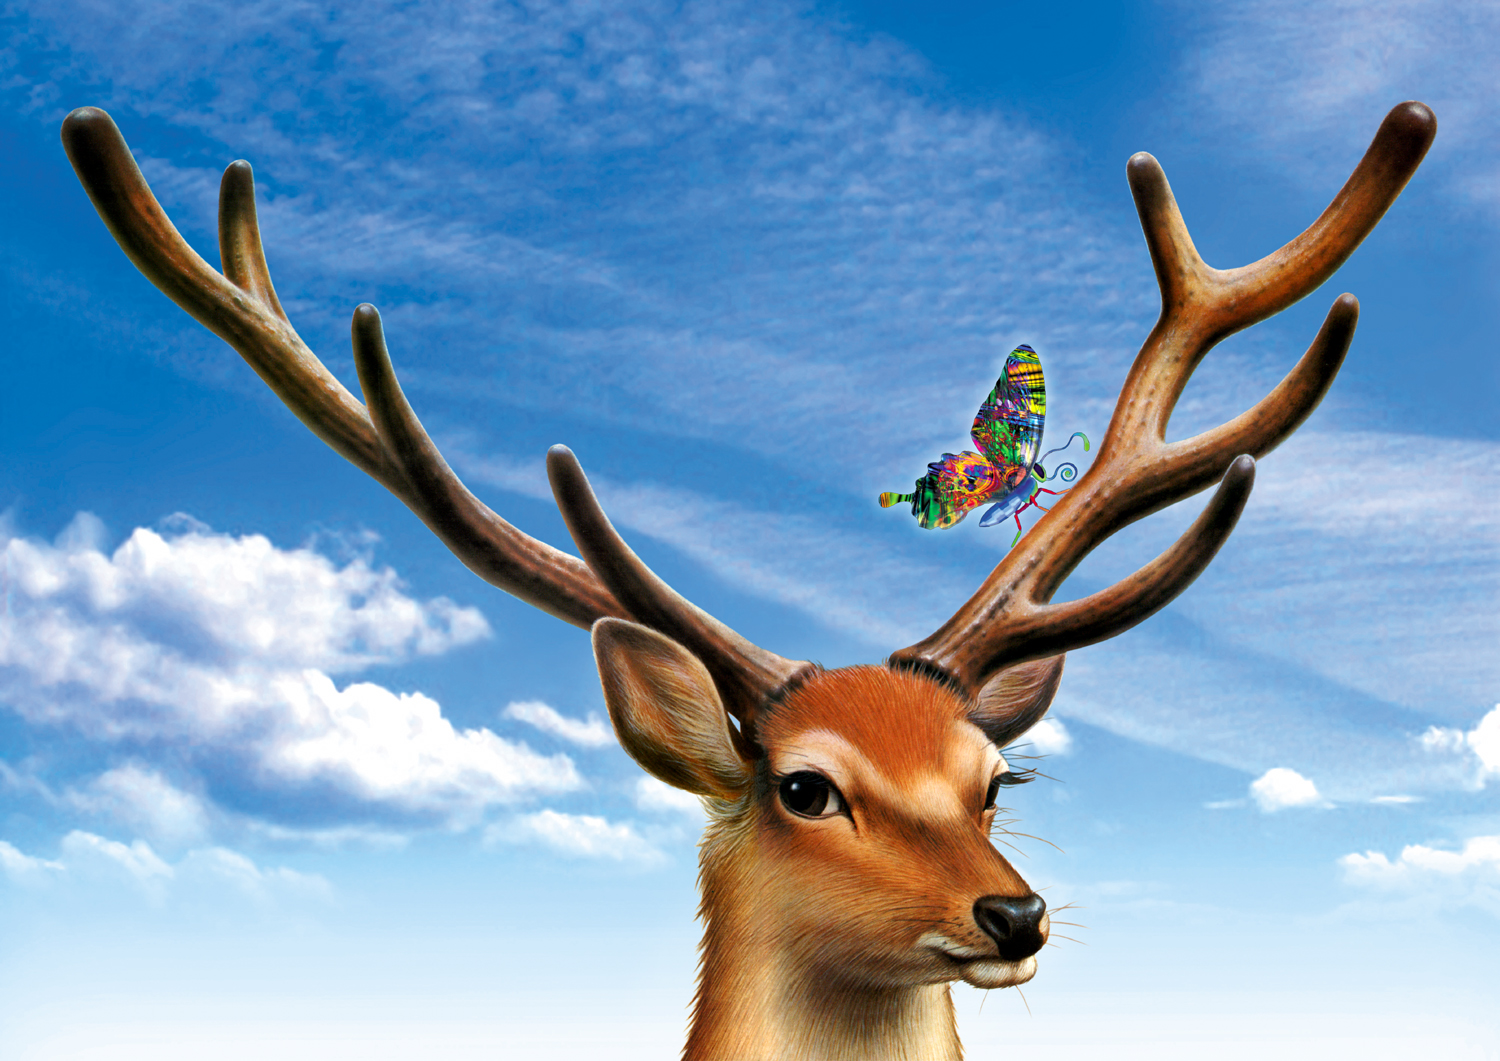 O Xrhsths 外園 勉 デザイン アートの職人 Sto Twitter シカと蝶のイラストを組み合わせて新しい作品にしてみました 30年前の手描きのシカと 2年前に撮影した空と 今年創作した蝶 を使って時を越えた作品です 鹿 科学絵本 リキテックス リアルイラスト